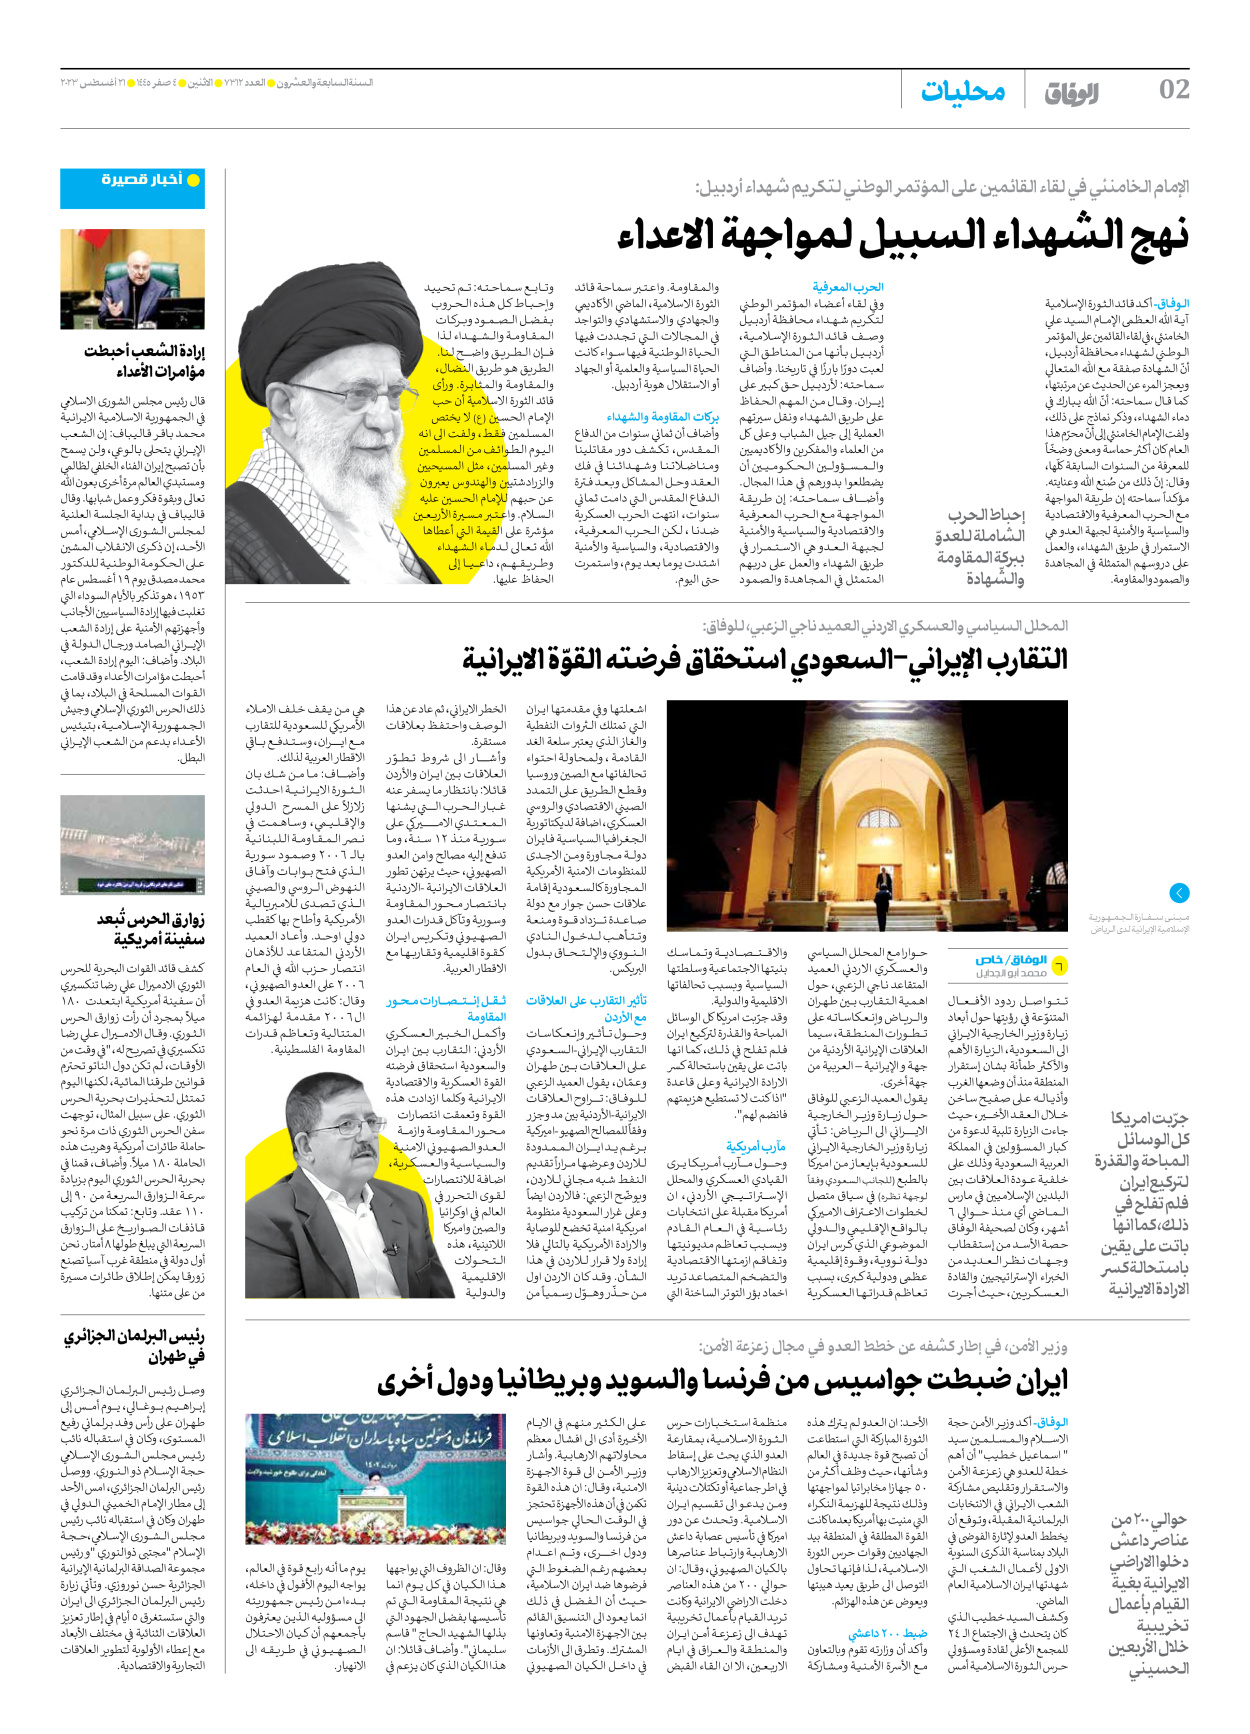 صحیفة ایران الدولیة الوفاق - العدد سبعة آلاف وثلاثمائة واثنا عشر - ٢١ أغسطس ٢٠٢٣ - الصفحة ۲